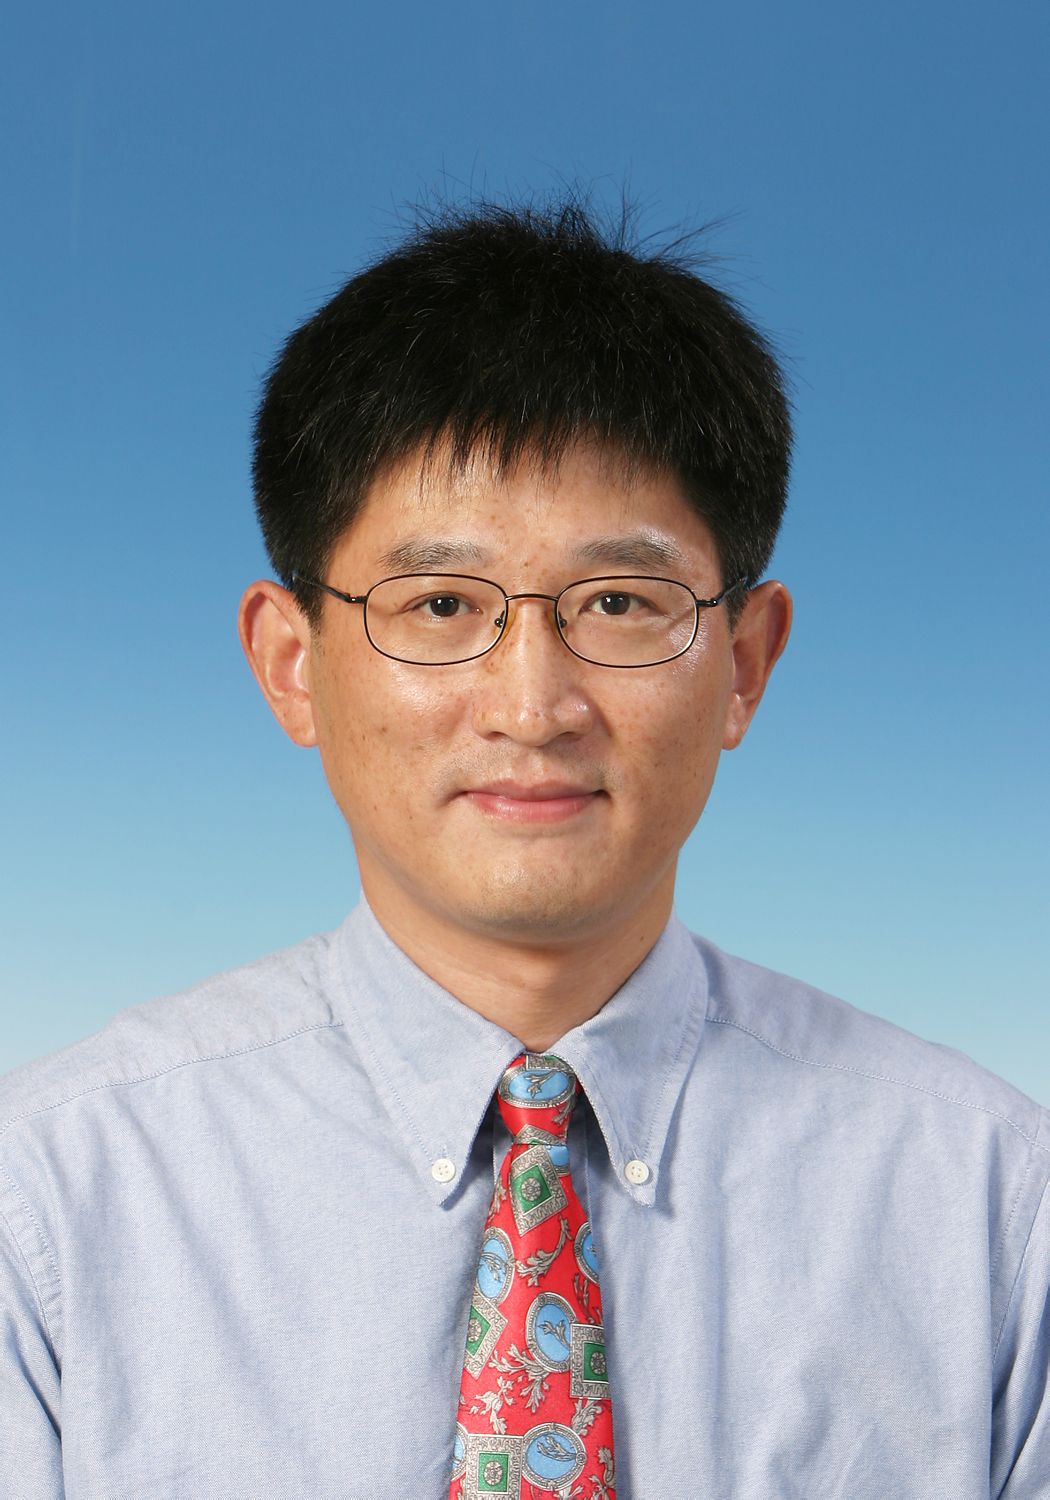 孫慶平(香港科技大學教授)